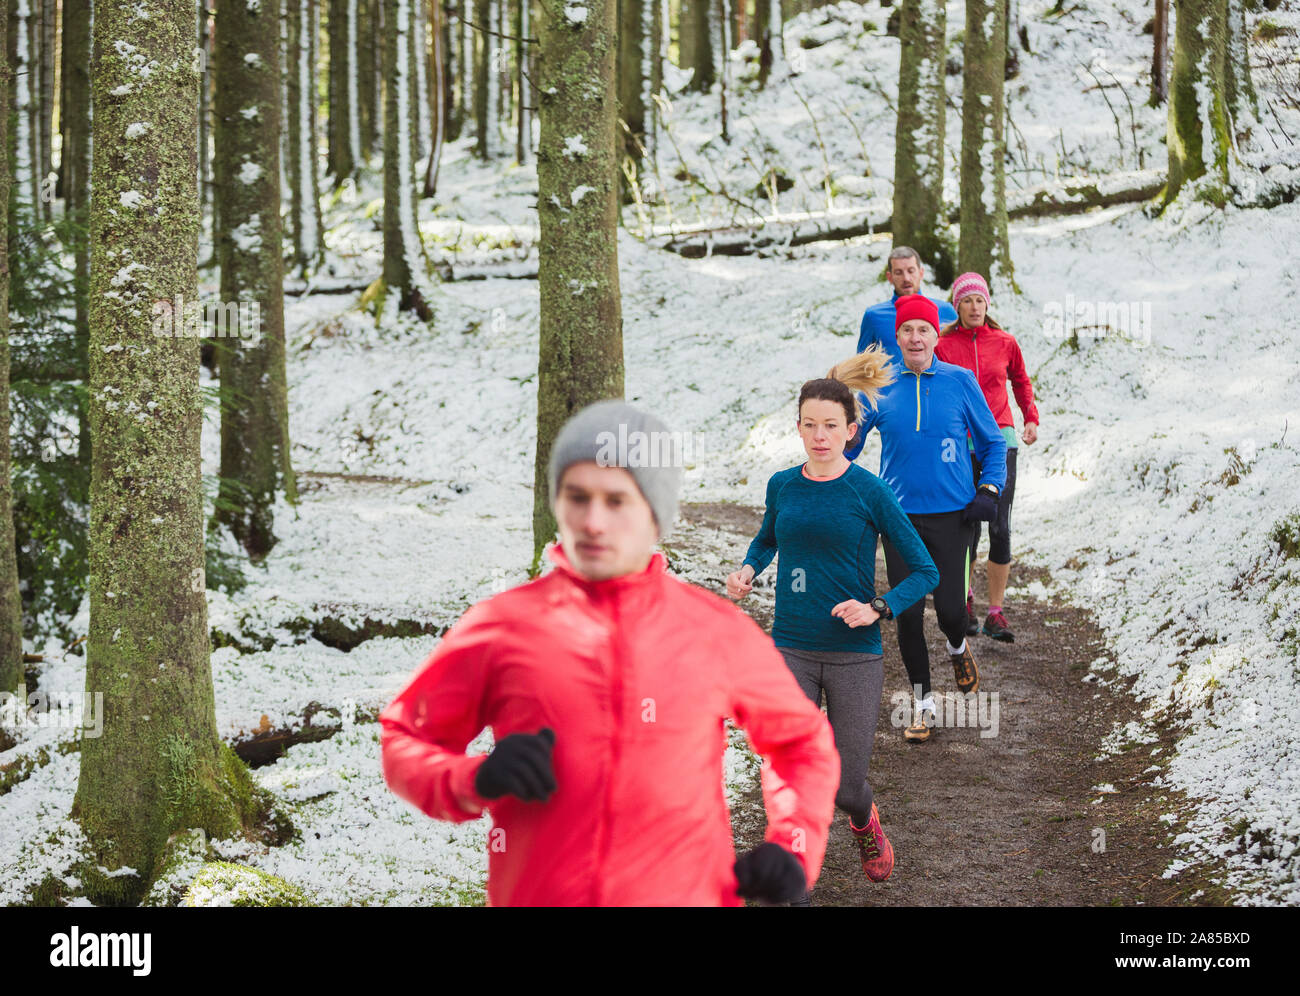 Freunde Jogging auf Trail im verschneiten Wald Stockfoto